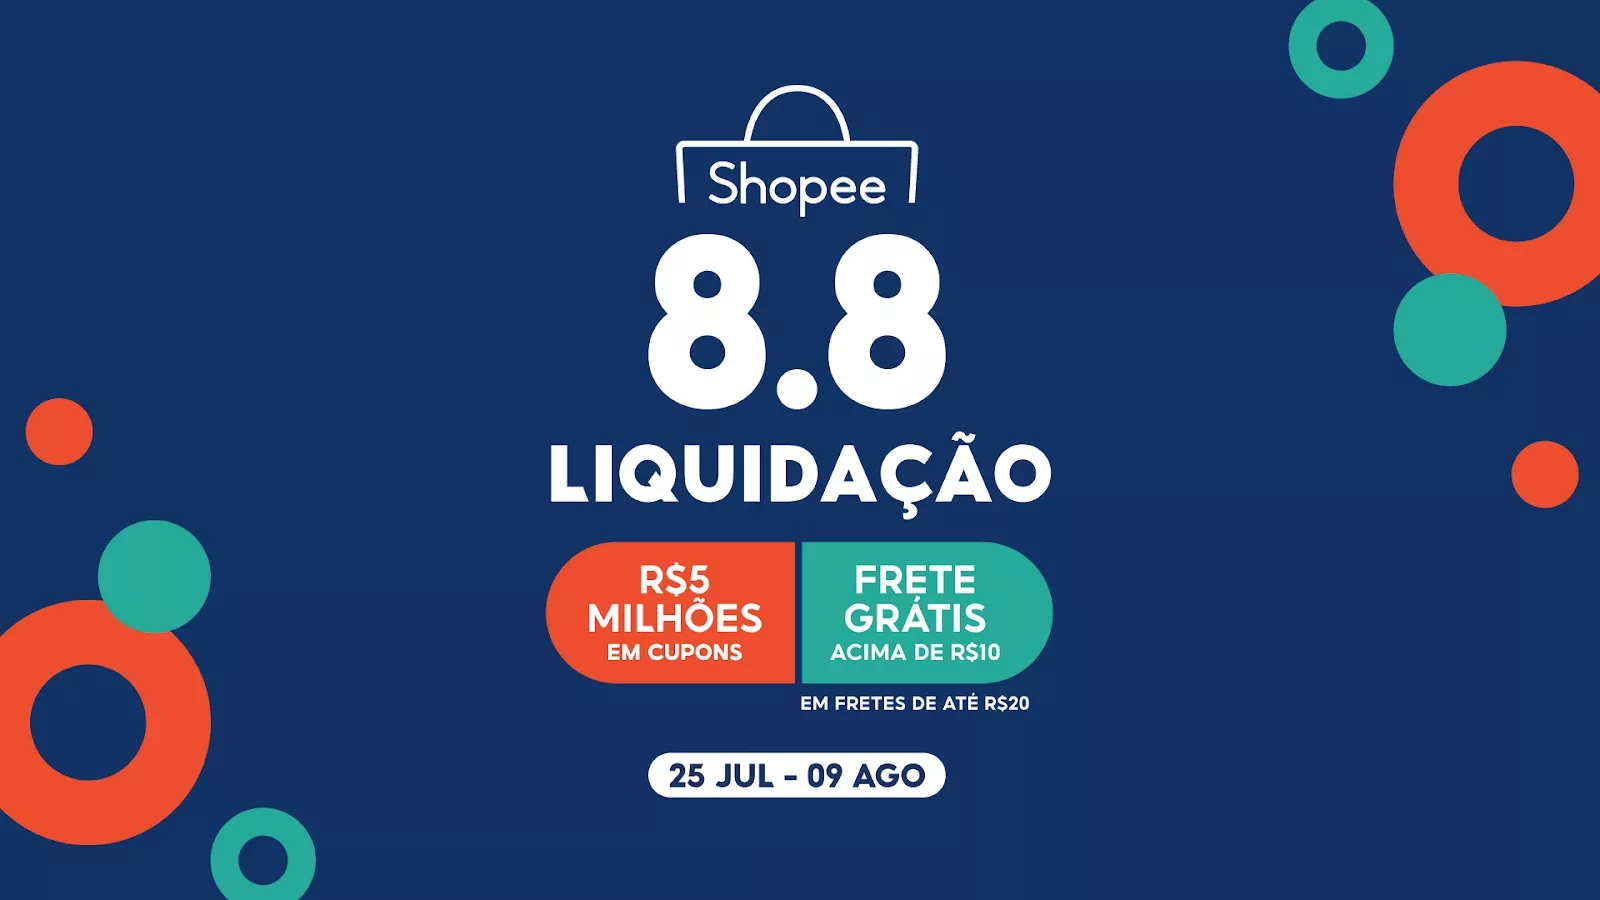 Ofertas incríveis. Melhores preços do mercado - Shopee Brasil